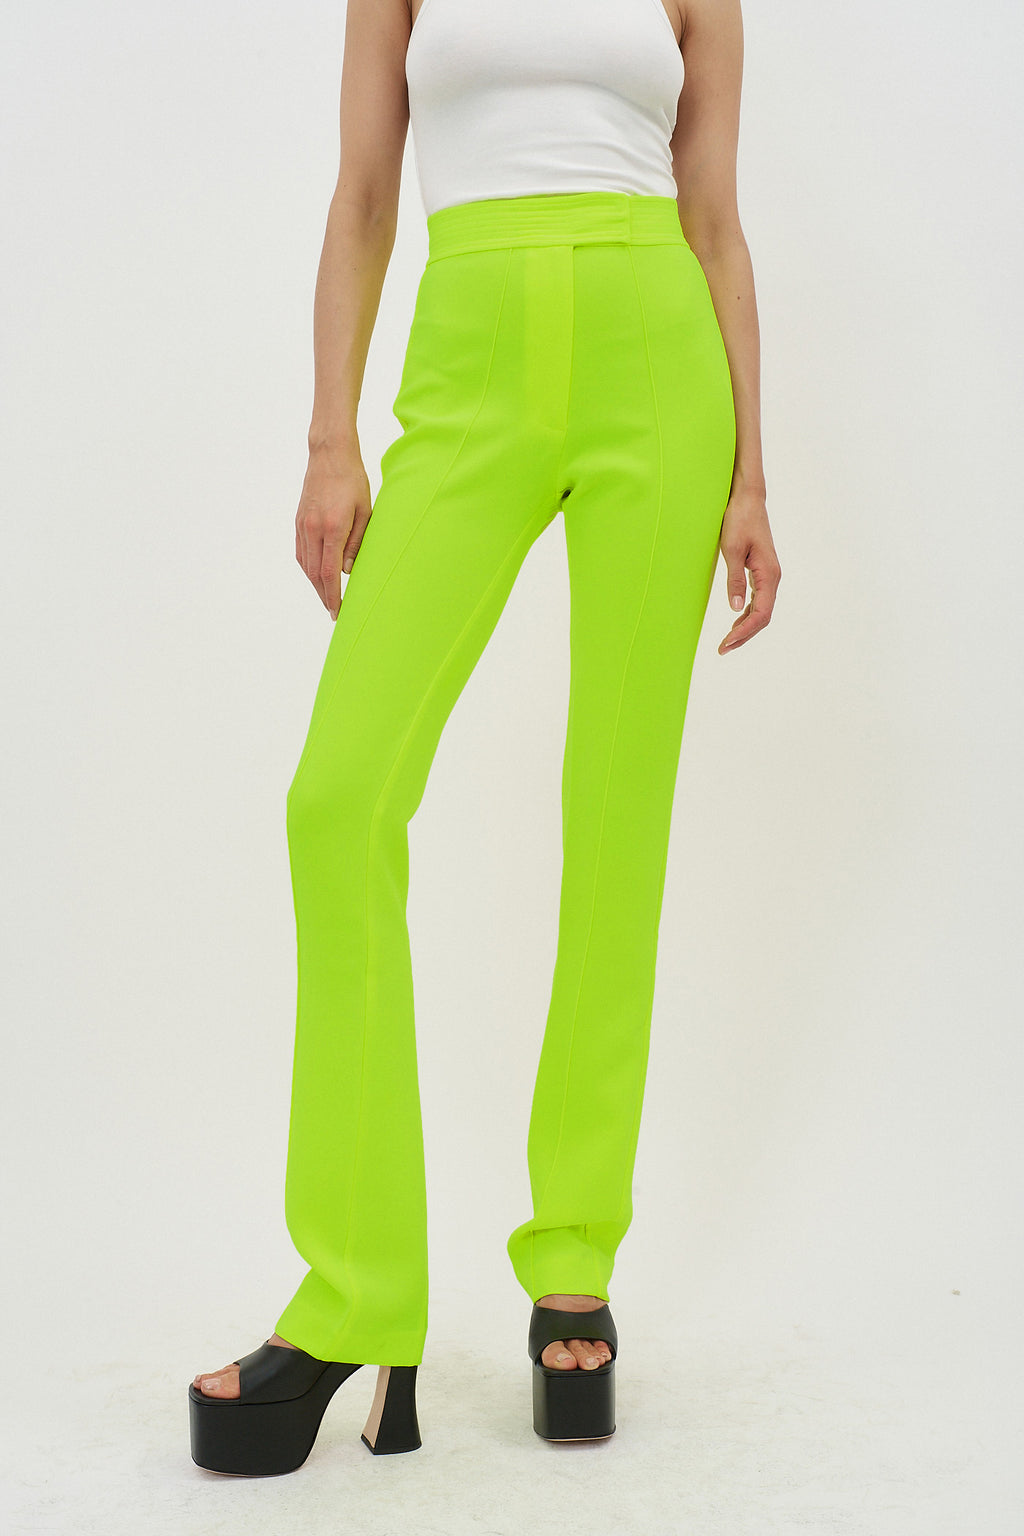 Slate Neon Yellow Pants